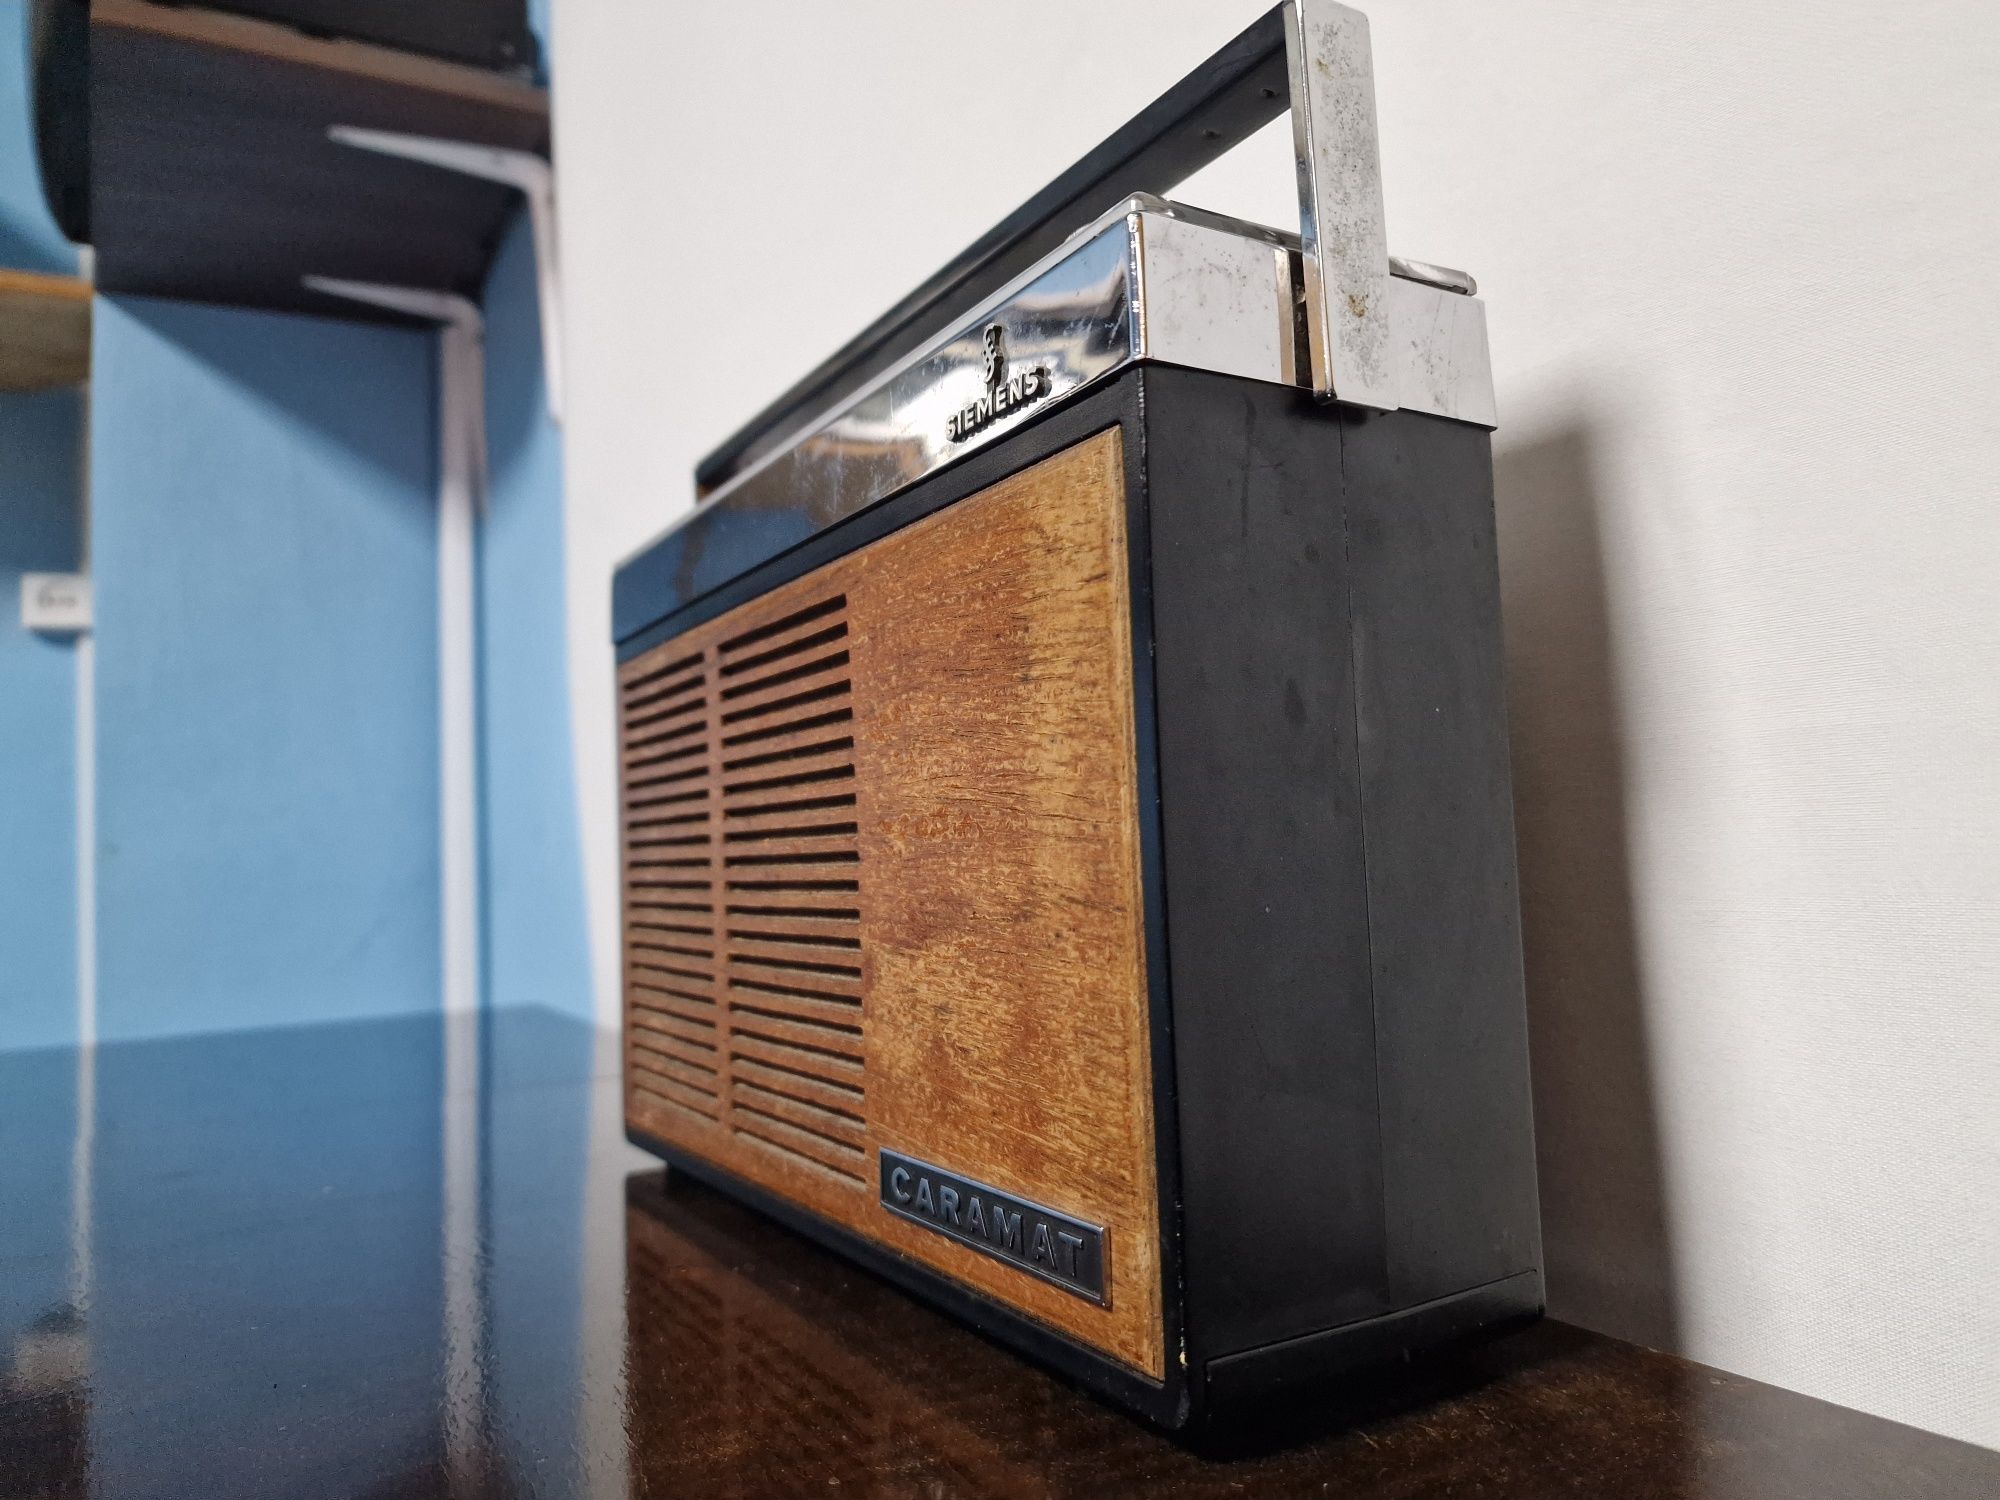 Rádio antigo reparado Siemens